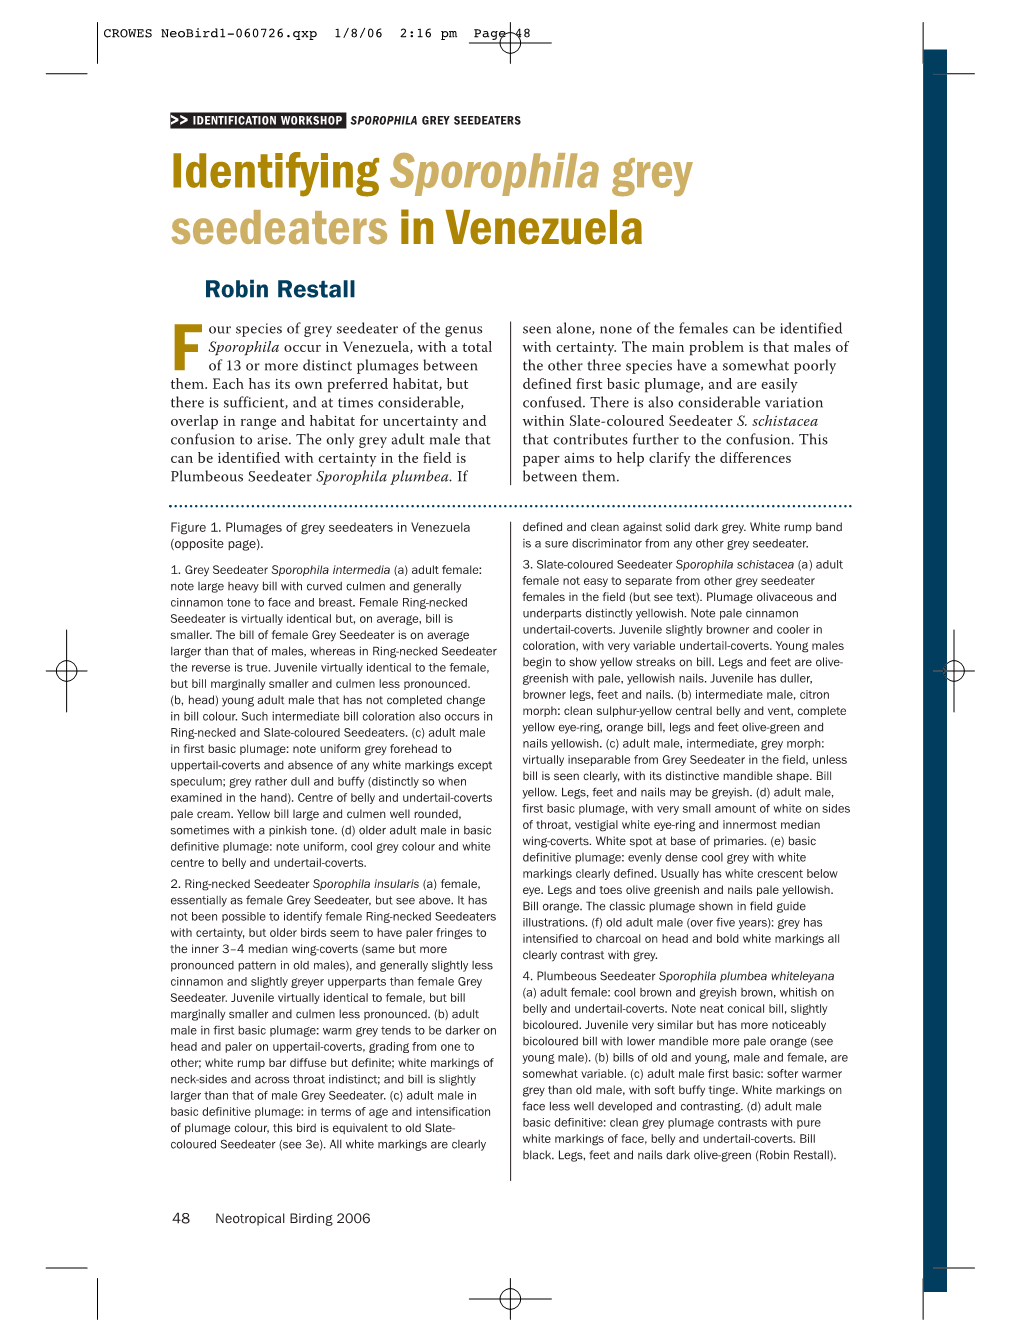 Identifying Sporophila Grey Seedeaters in Venezuela Robin Restall